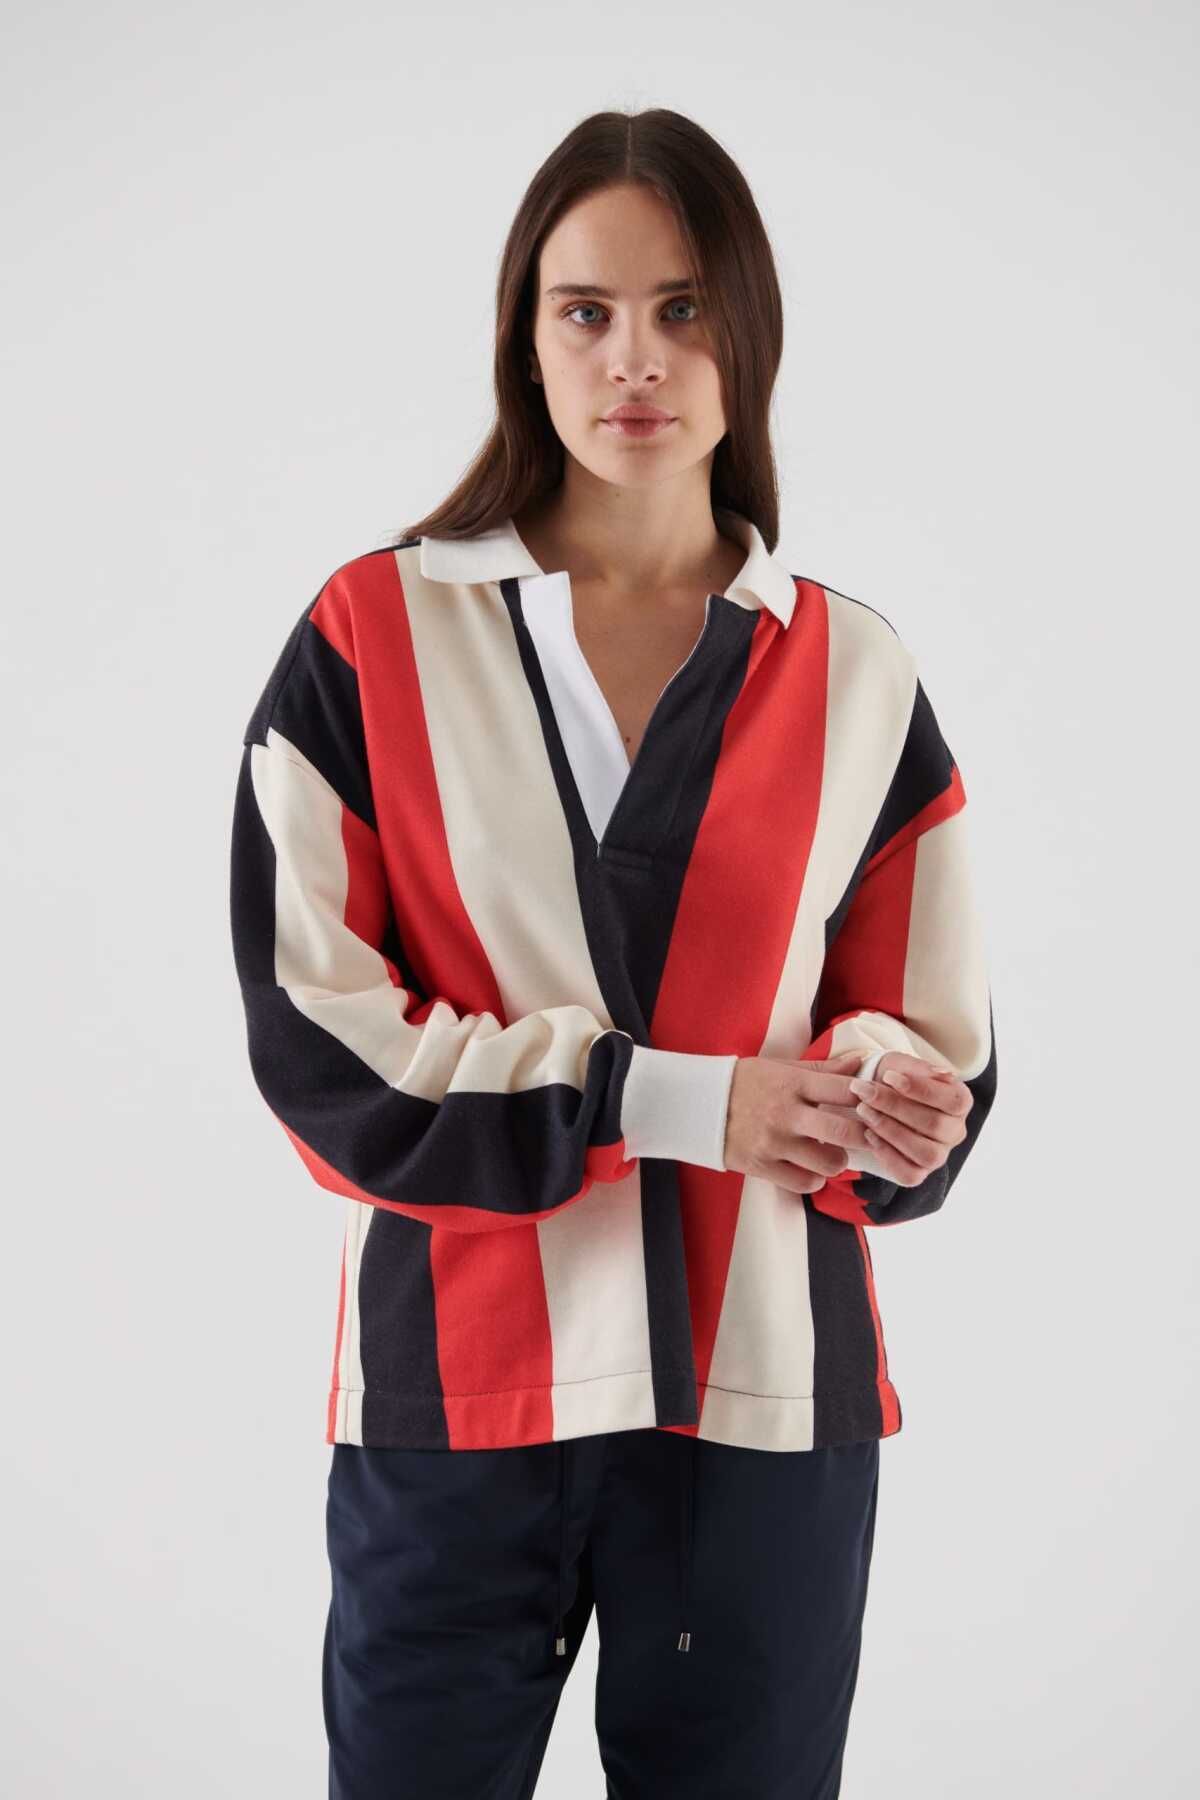 Roman Renkli Çizgili Kadın Sweatshirt Standart Renk K2354105_089